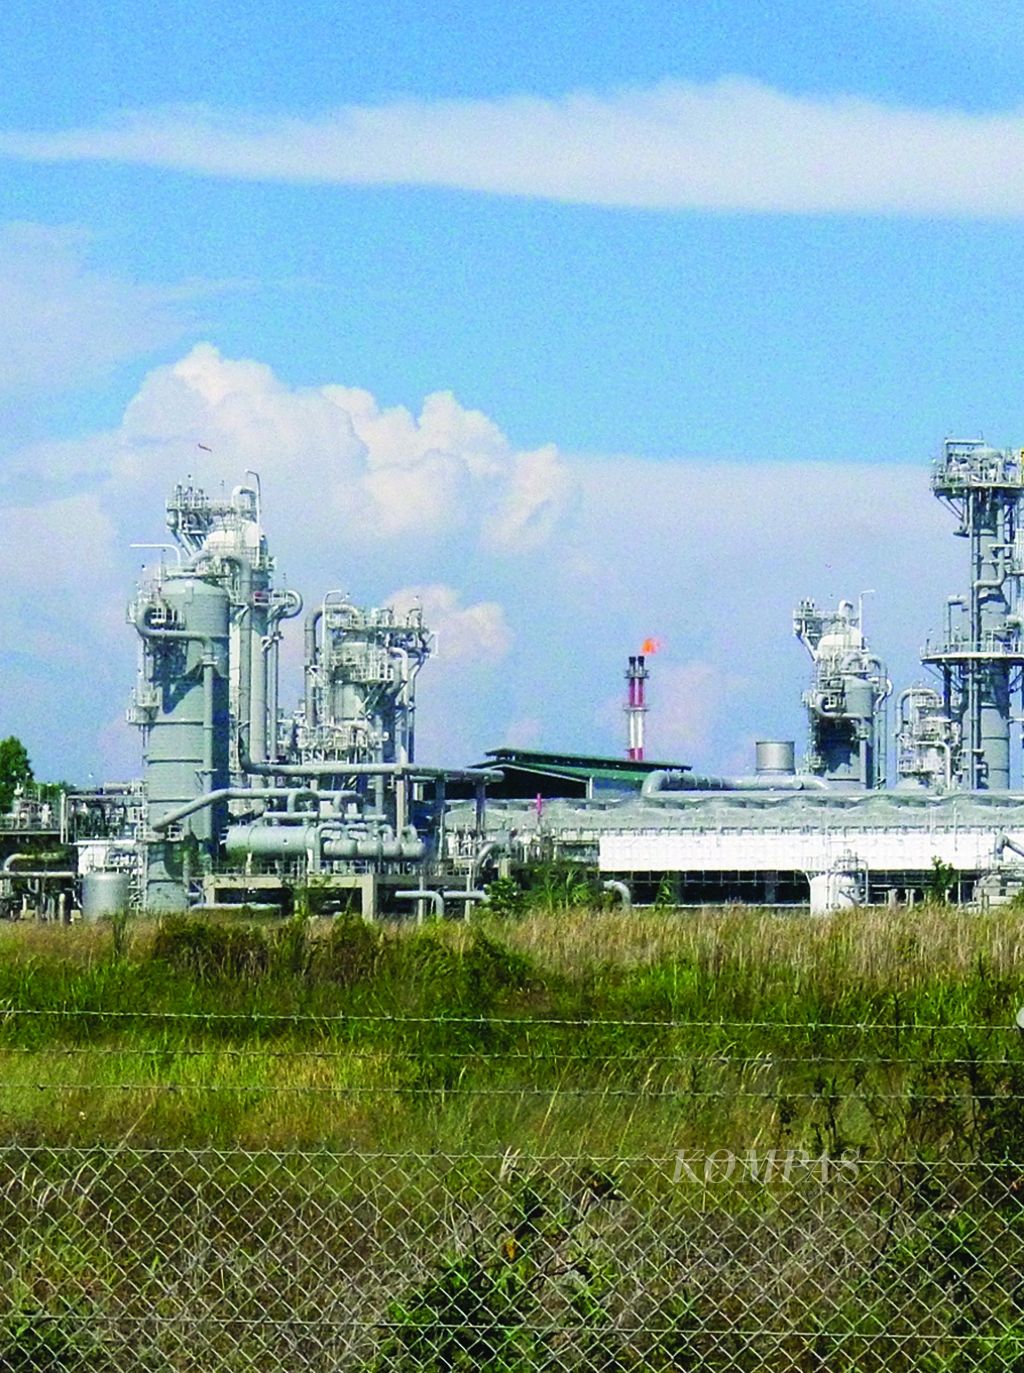 LNG Tangguh salah salah satu penghasil gas alam cair Indonesia yang terletak di Kampung Tanah Merah, Distrik Sumuri, Kabupaten Teluk Bintuni, Papua Barat, Selasa (13/12).